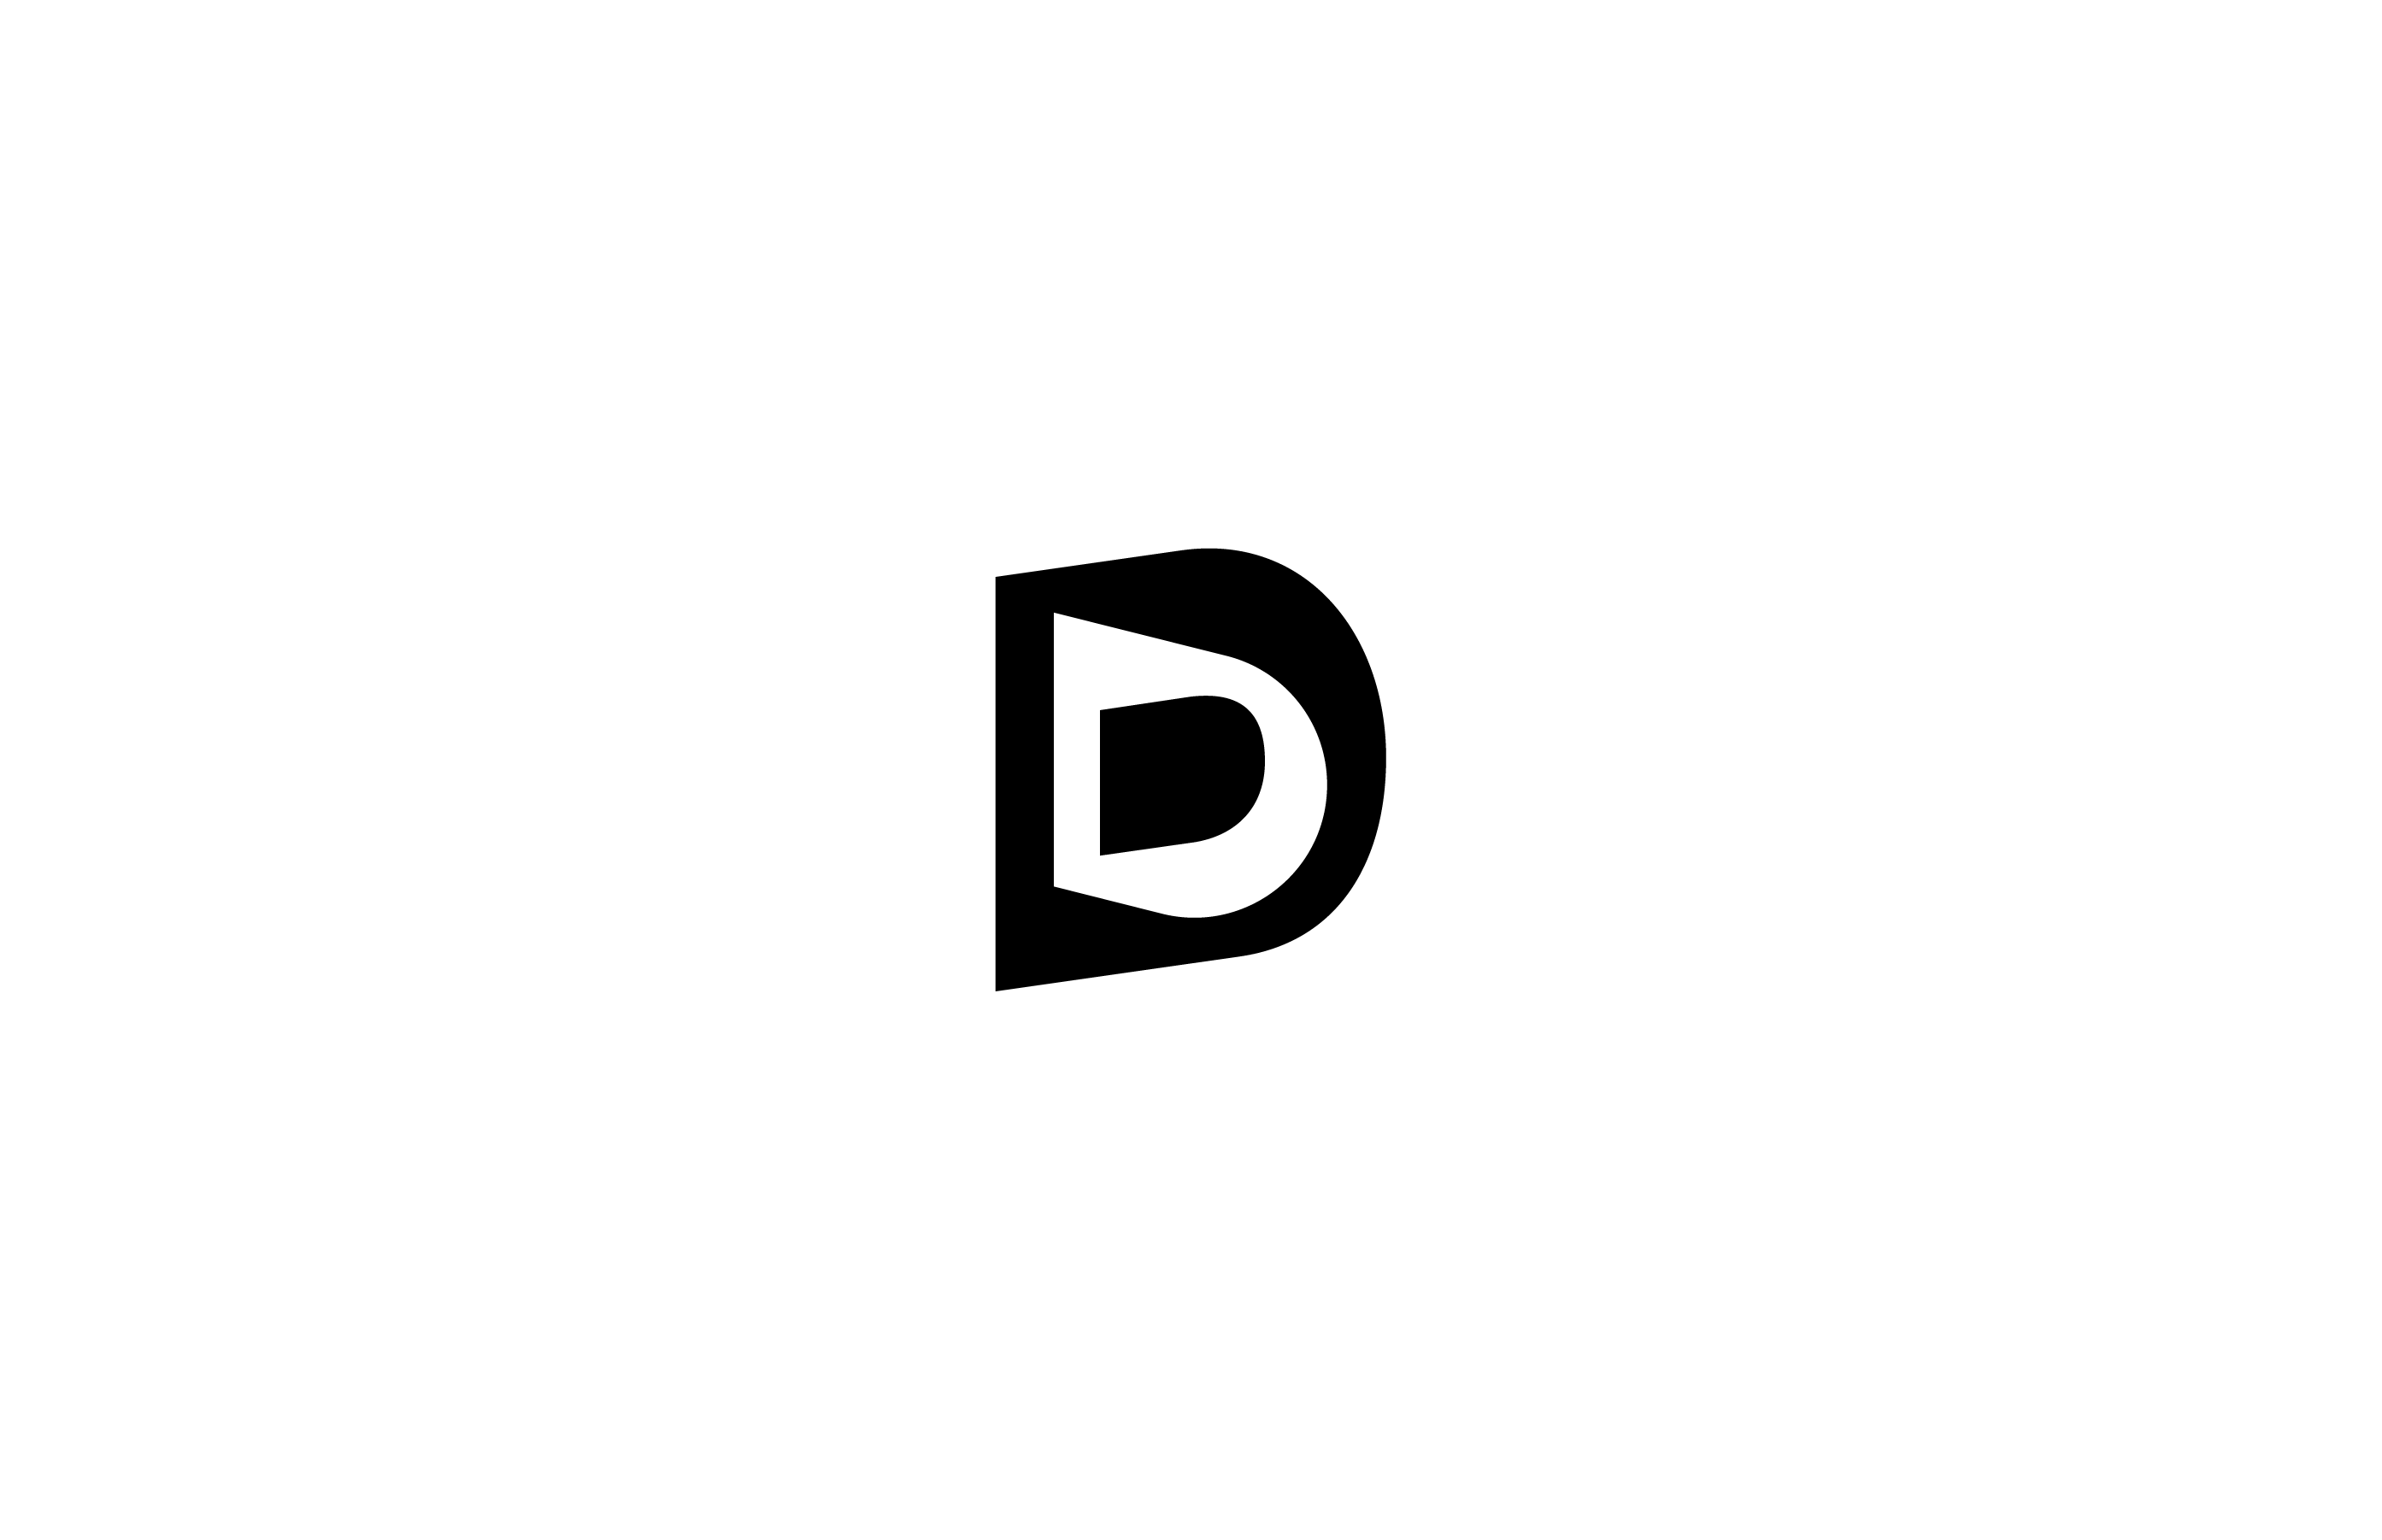 letter d dimension 3D portal enter door teleport negative space solid classic logo design mark symbol timeless